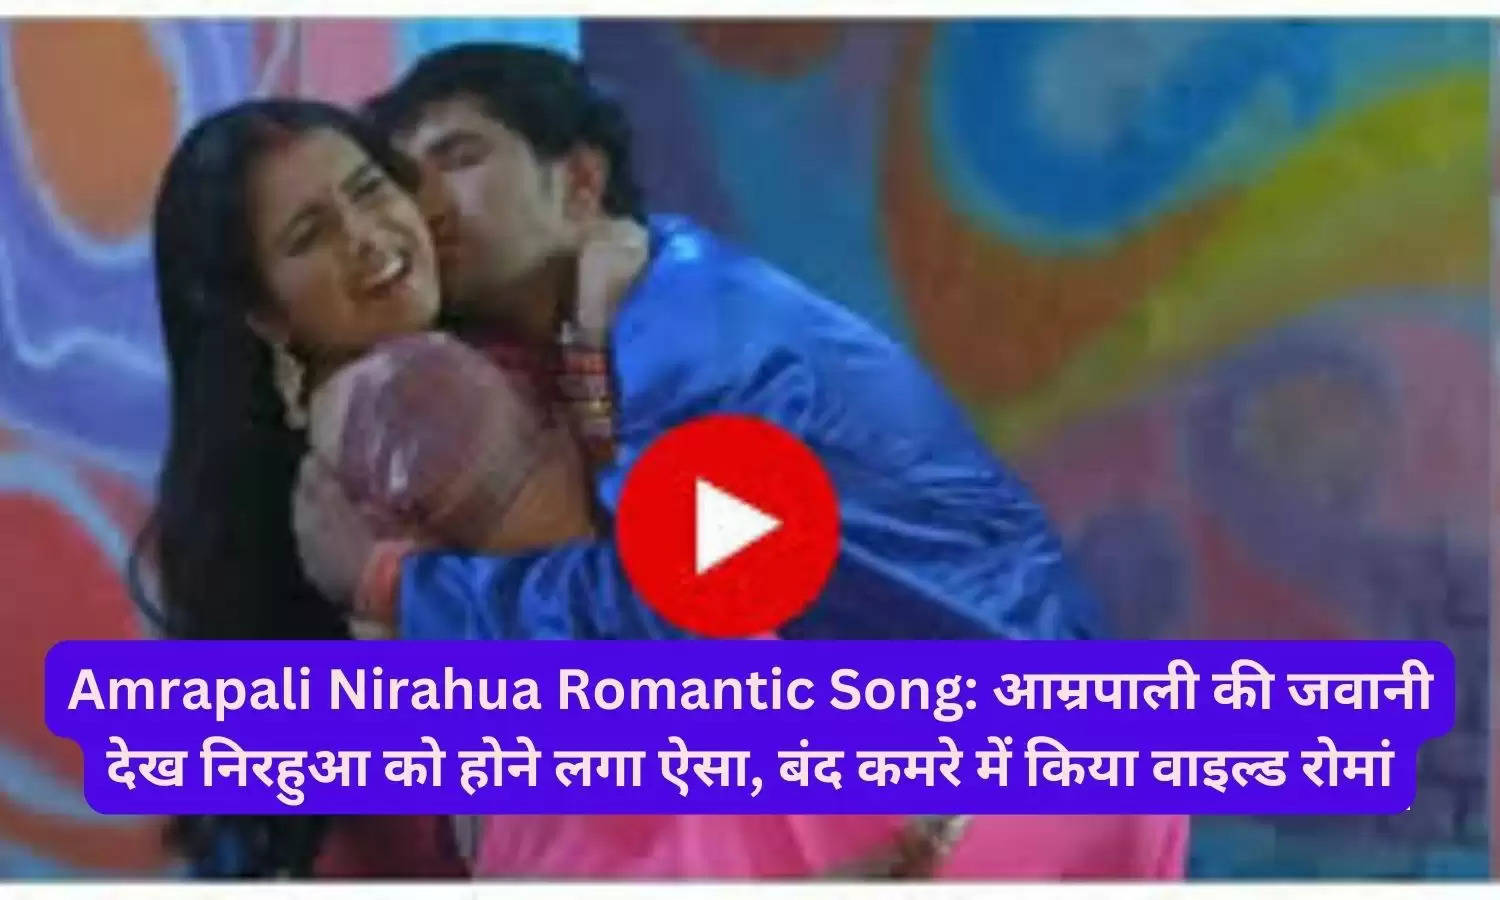 Amrapali Nirahua Romantic Song: आम्रपाली की जवानी देख निरहुआ को होने लगा ऐसा, बंद कमरे में किया वाइल्ड रोमां